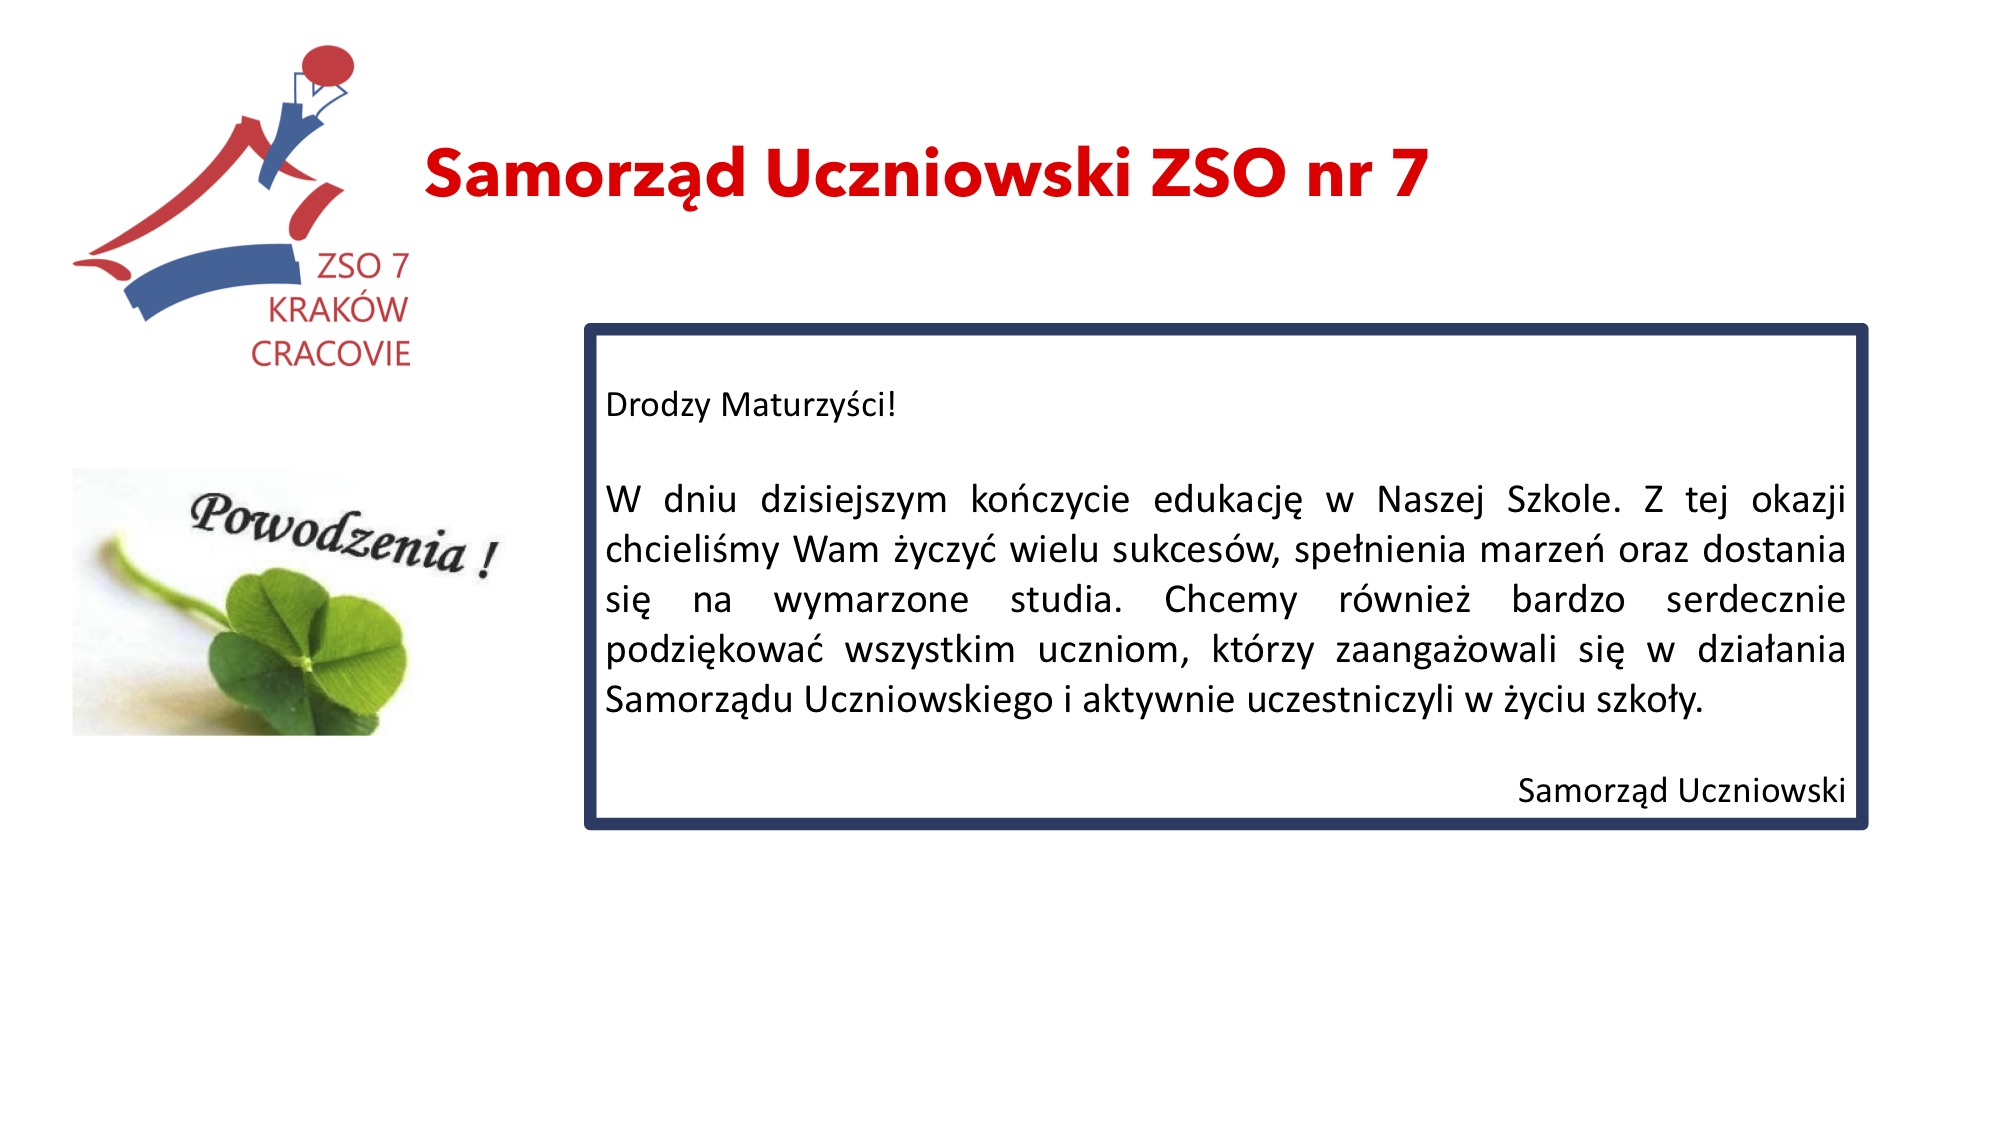 SAMORZAD UCZNIOWSKI - copie 2